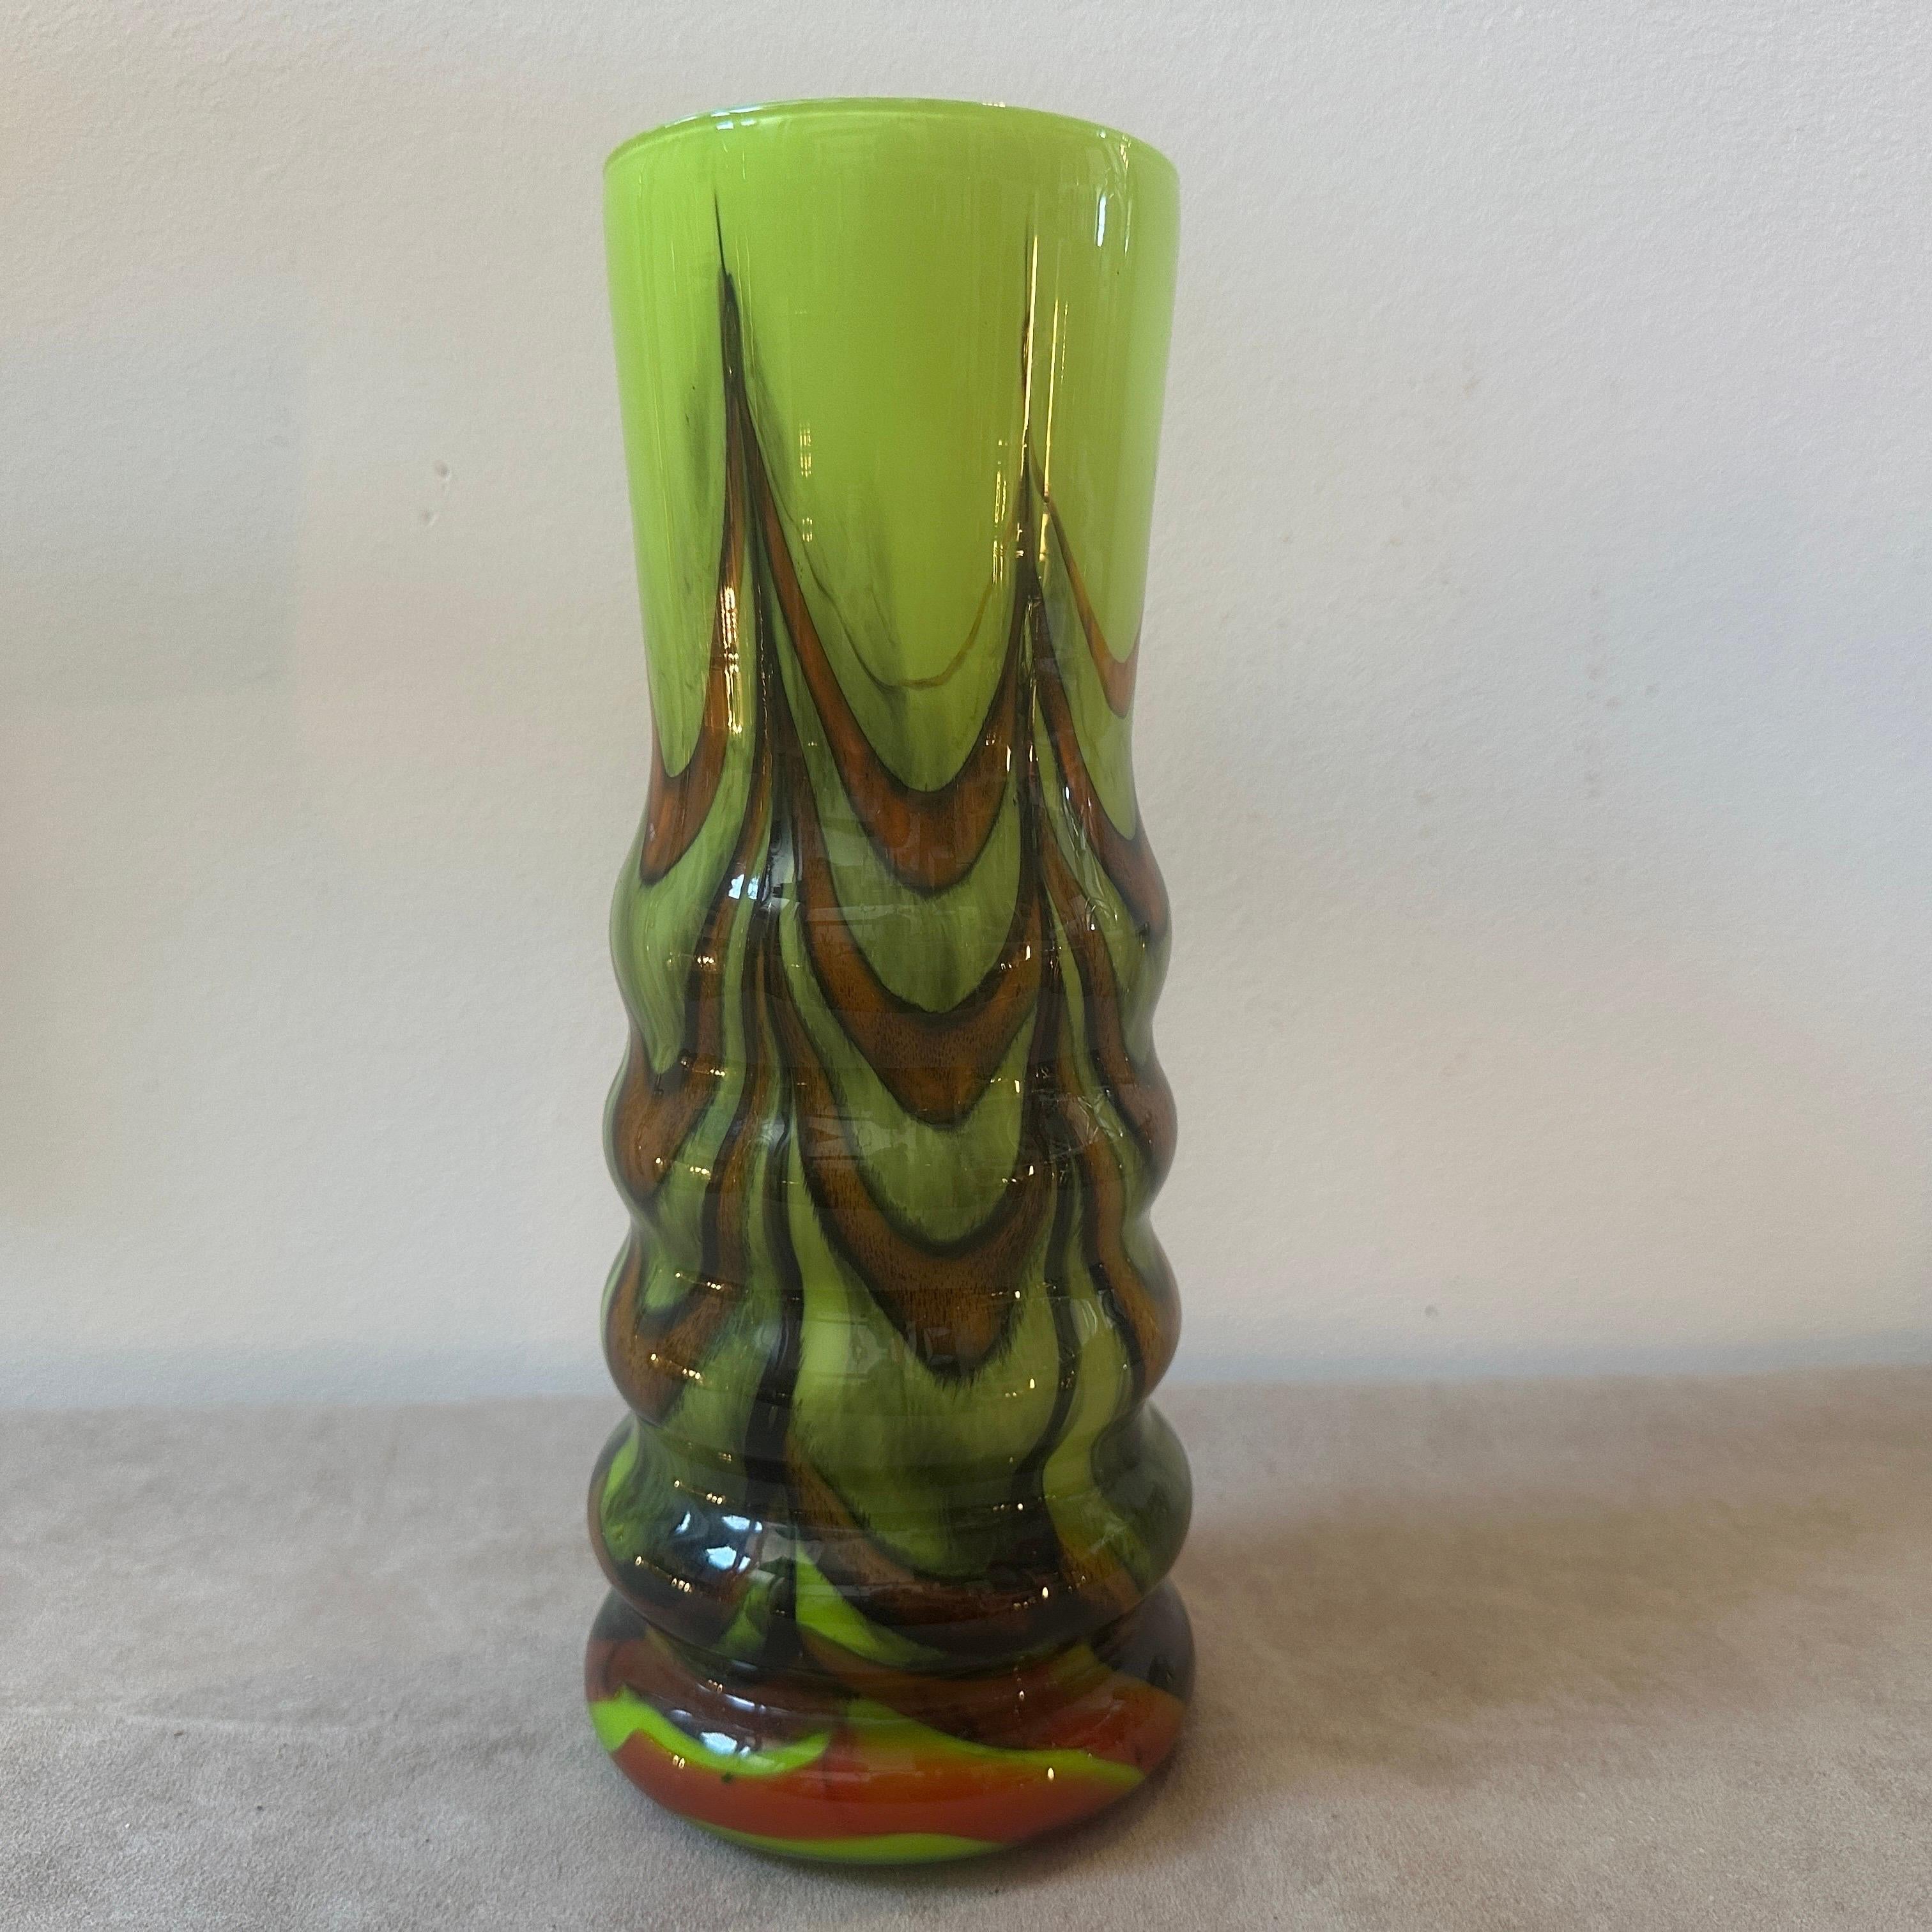 Ein perfekter Zustand Opalglas Vase entworfen und hergestellt in Italien von Opaline Florenz. Die Vase strahlt ein künstlerisches Flair und eine Raffinesse aus, die für Carlo Moretti charakteristisch sind. Die Kombination aus Opalglas und